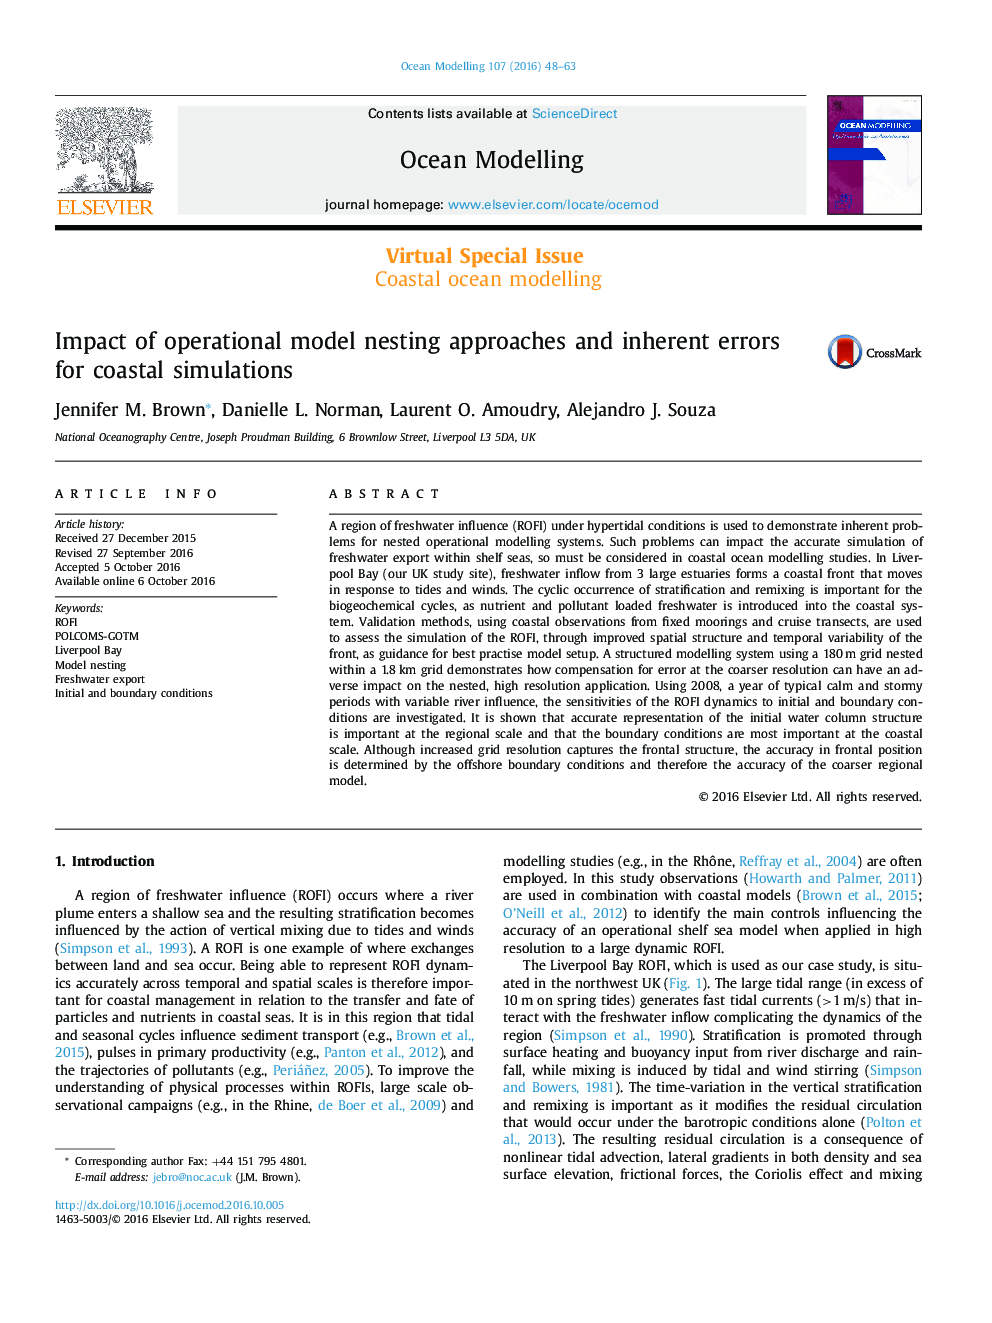 تاثیر روش های مدل تودرتو عملیاتی و خطاهای ذاتی برای شبیه سازی های ساحلی